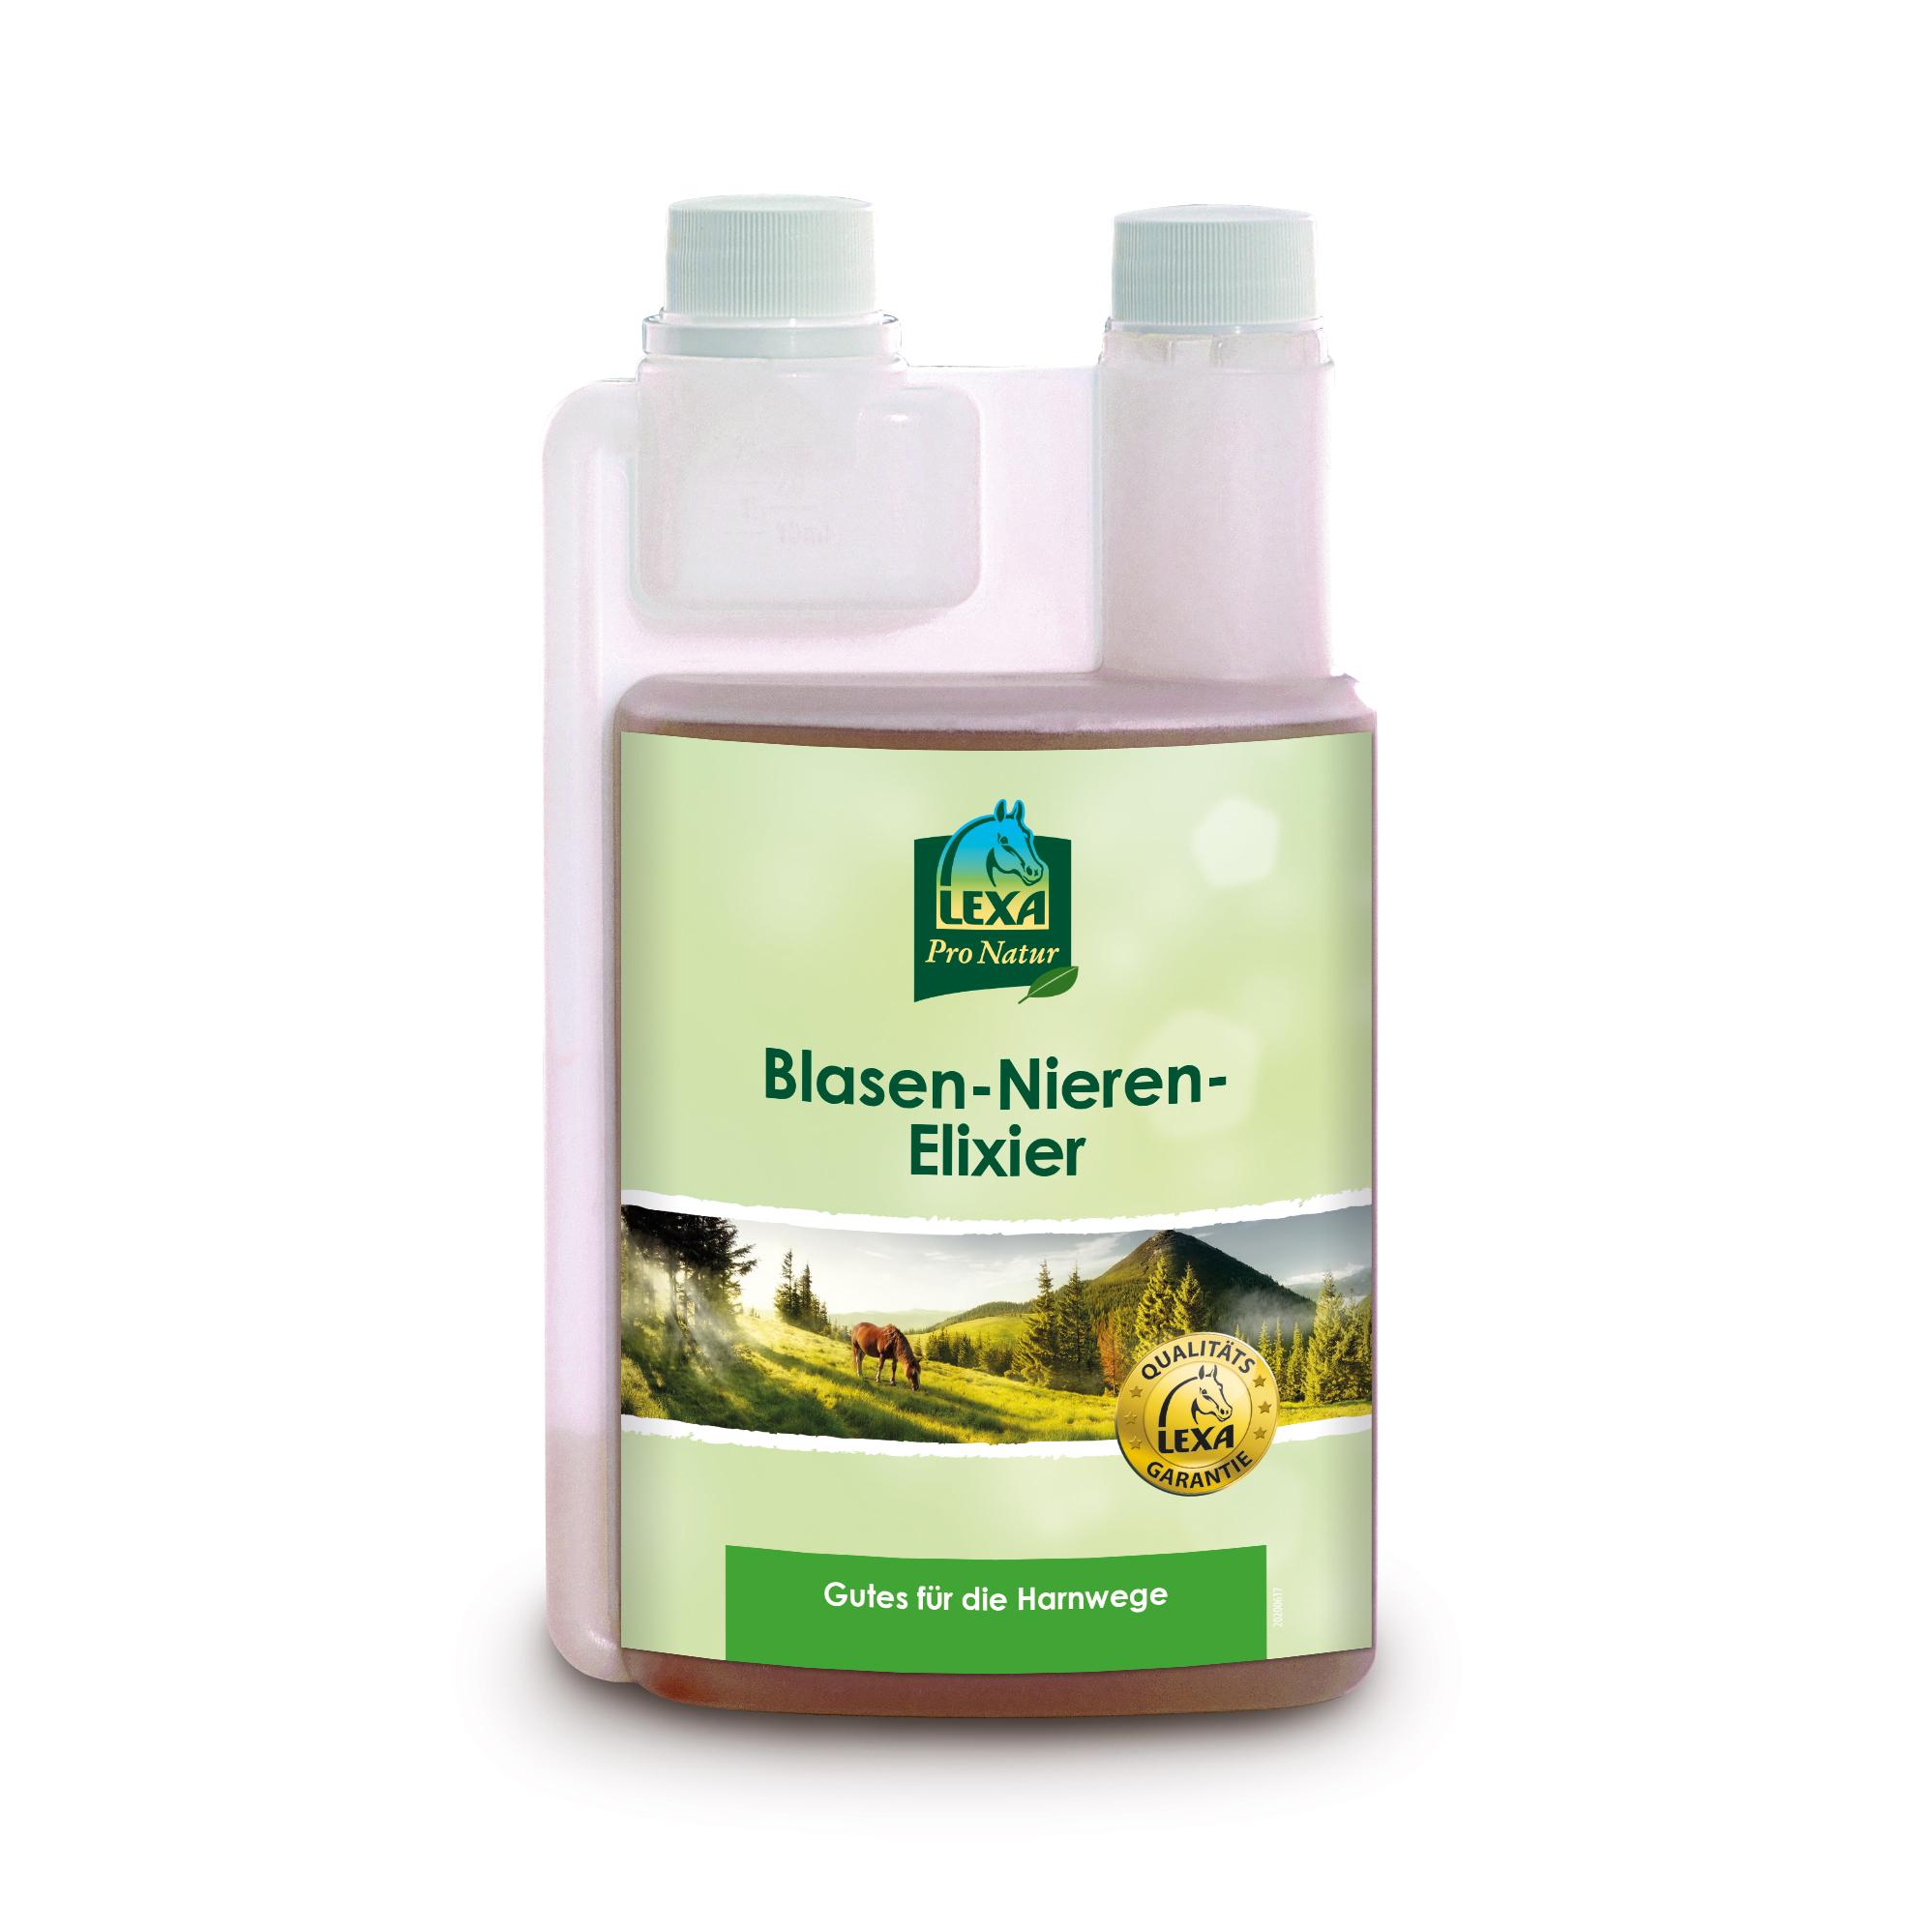 Lexa Blasen-Nieren-Elixier - 1 Liter